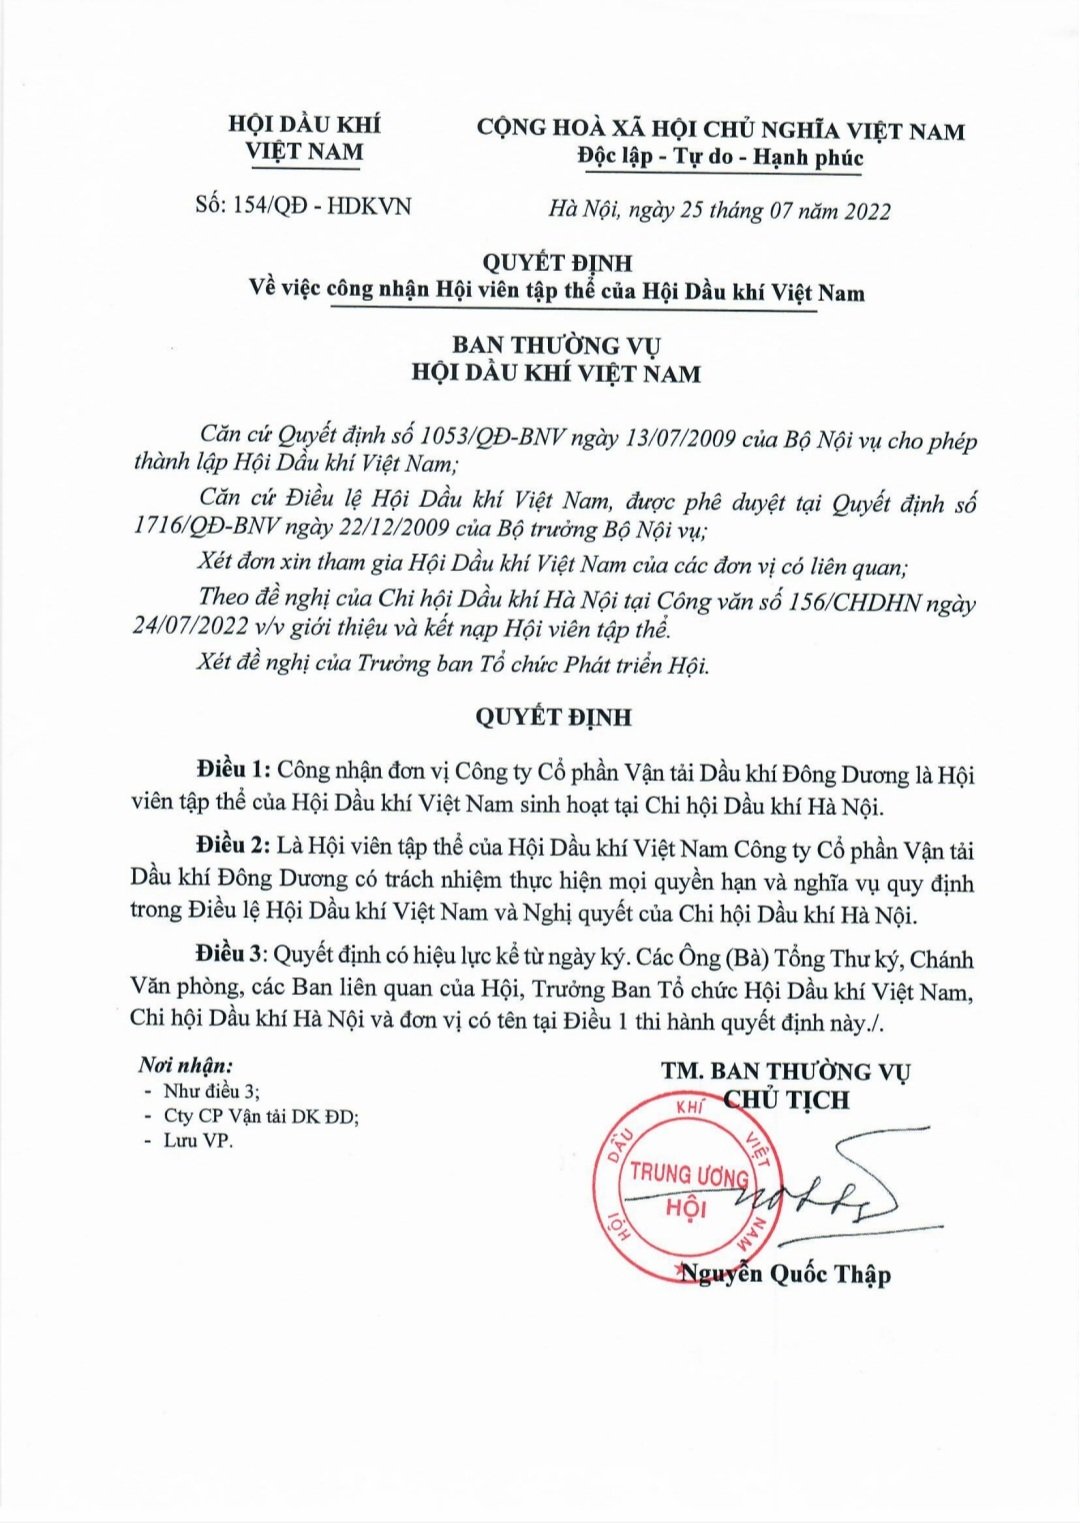 Quyết định công nhận Hội viên tập thể của Hội Dầu khí Việt Nam